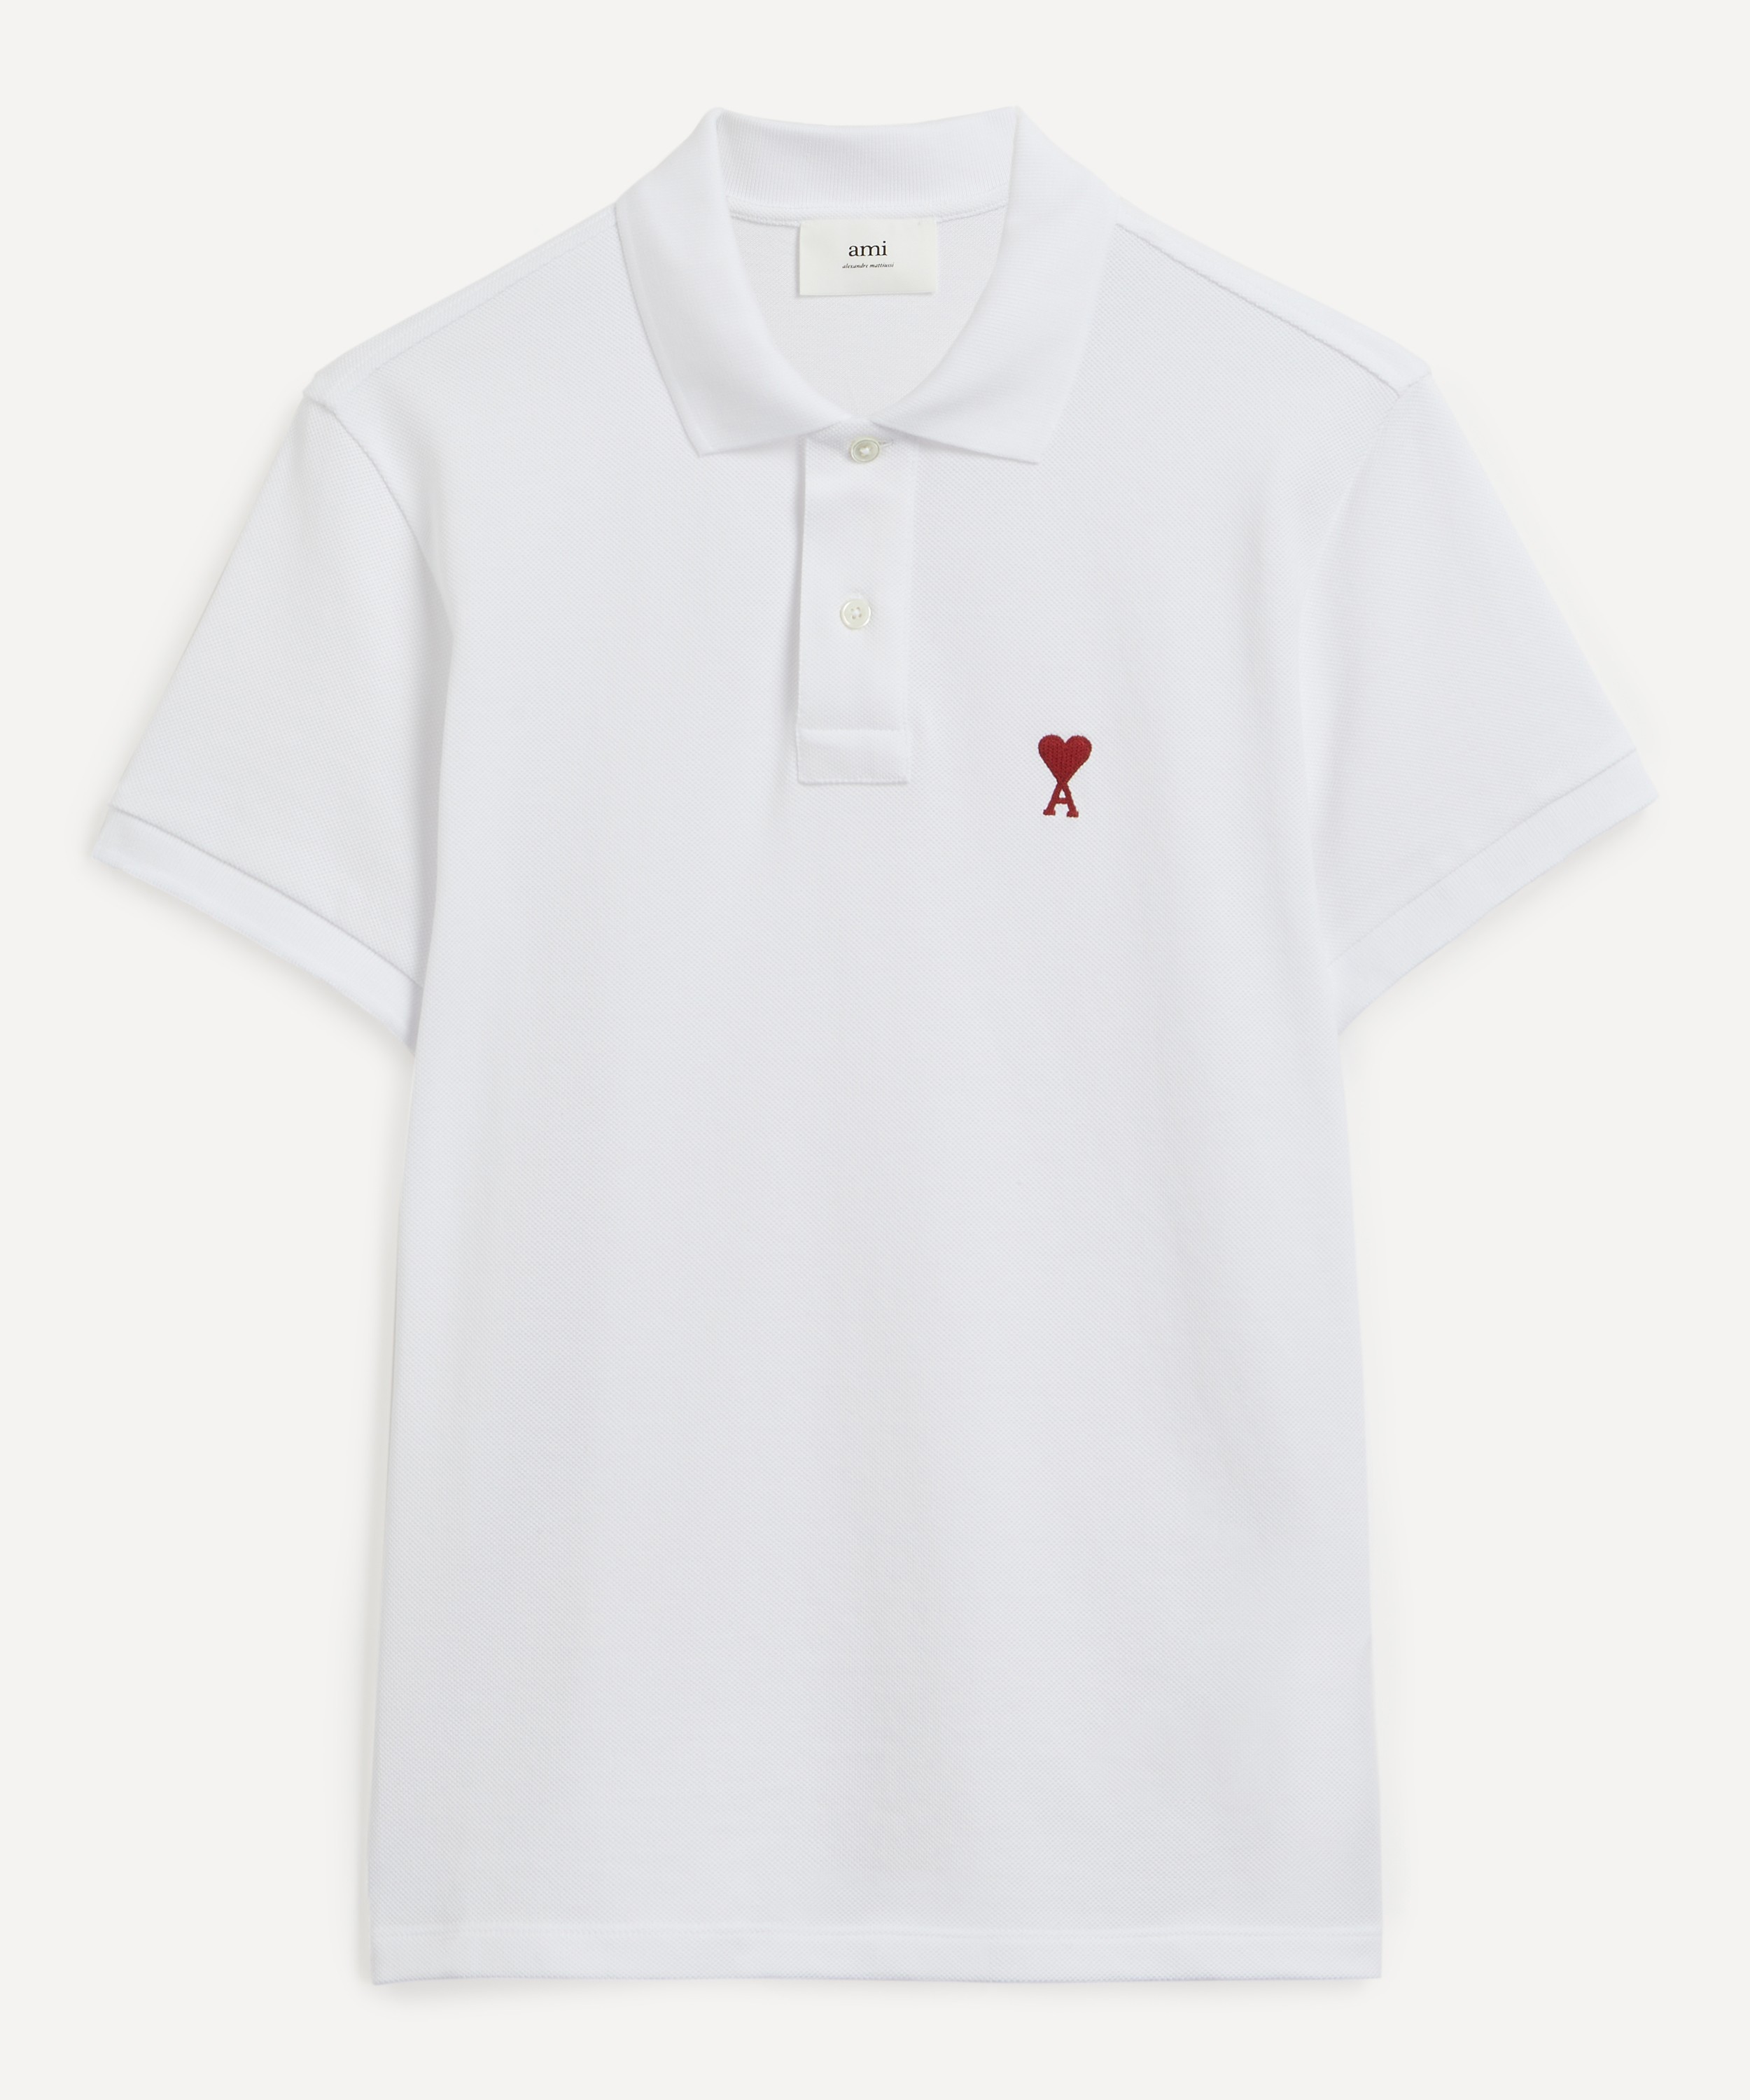 Ami - Classic Fit Ami de Coeur T-Shirt image number 0